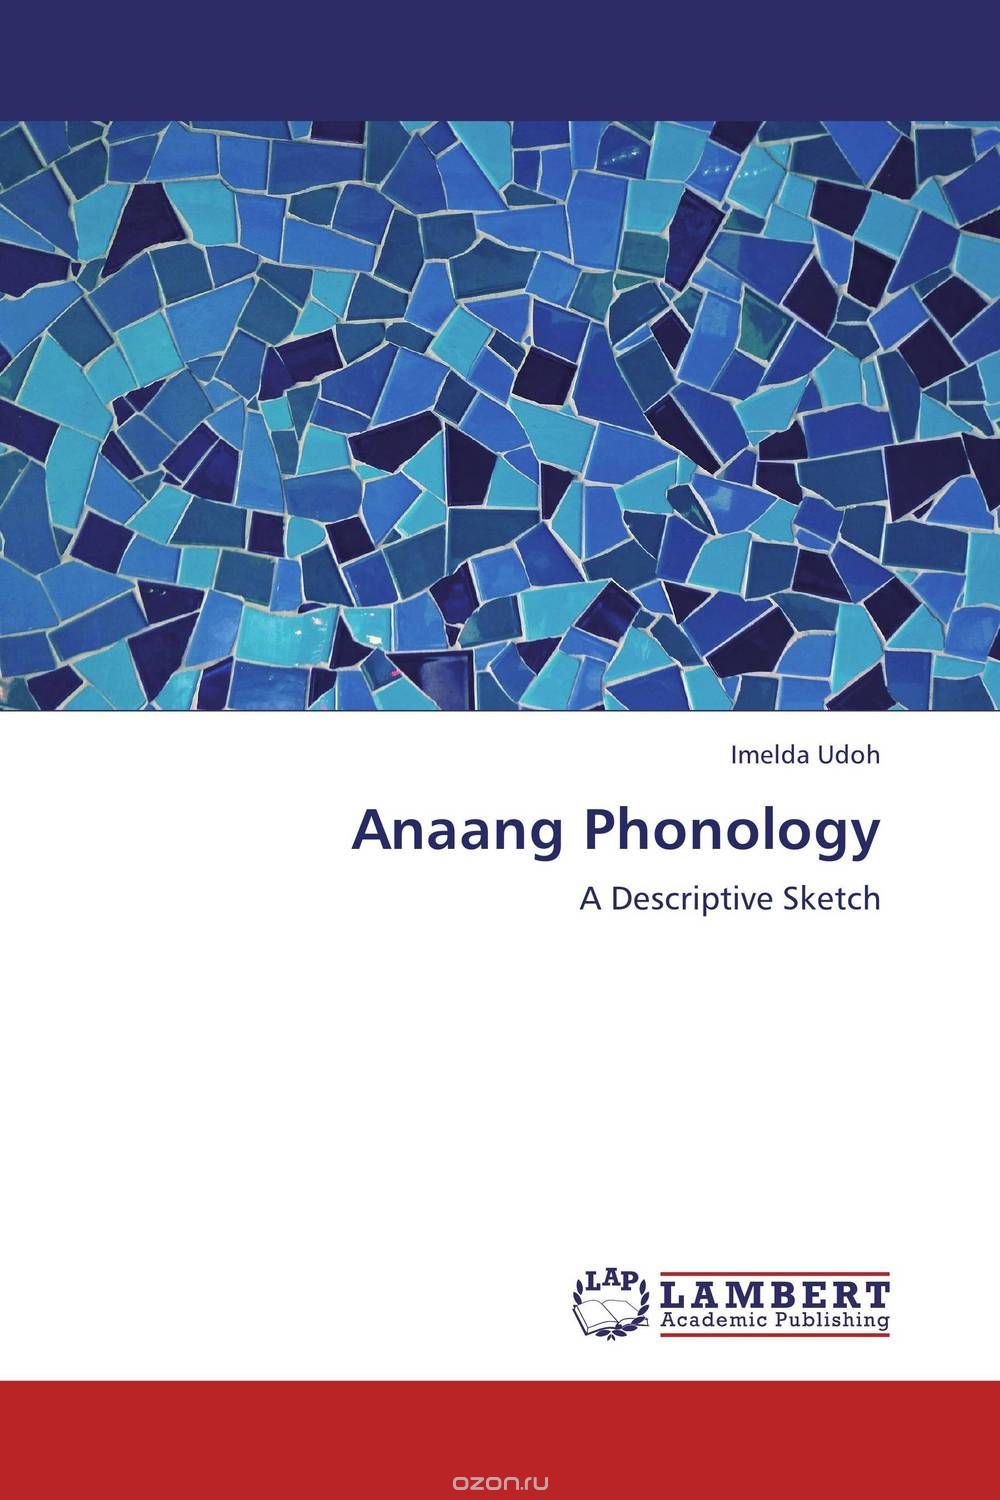 Скачать книгу "Anaang Phonology"